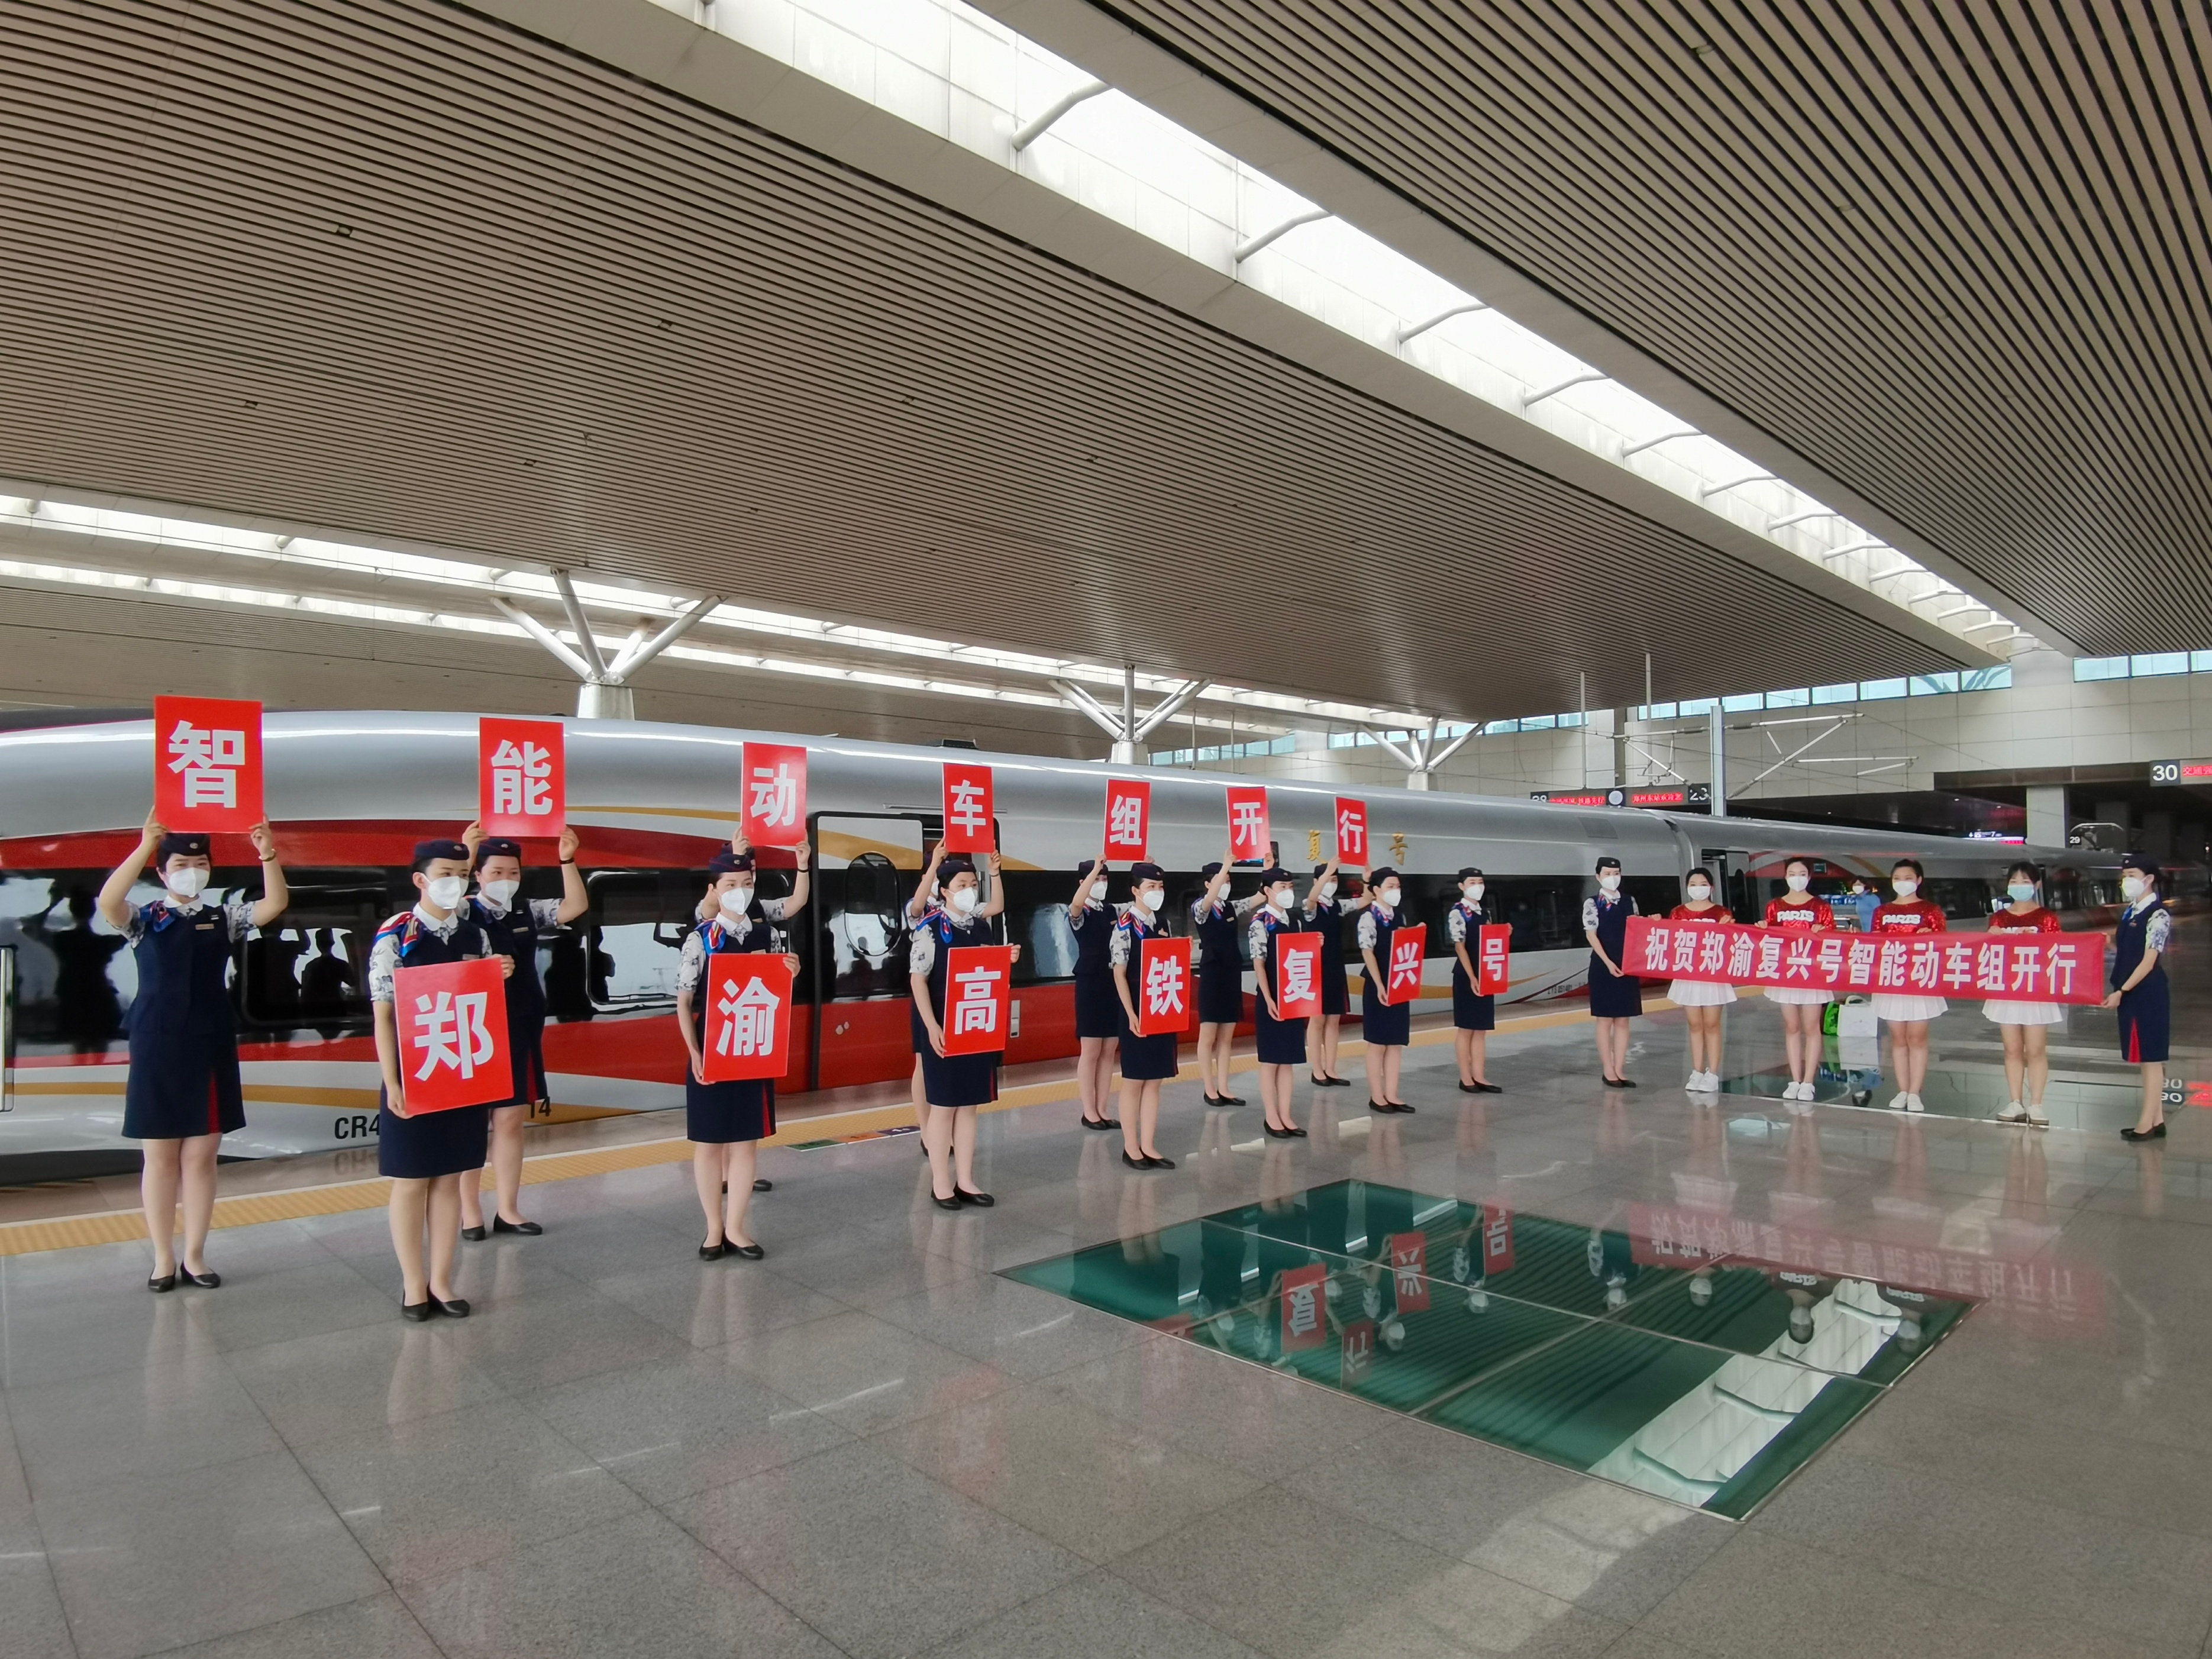 鄭州鐵路新添智能高鐵讓旅客體驗智能旅途